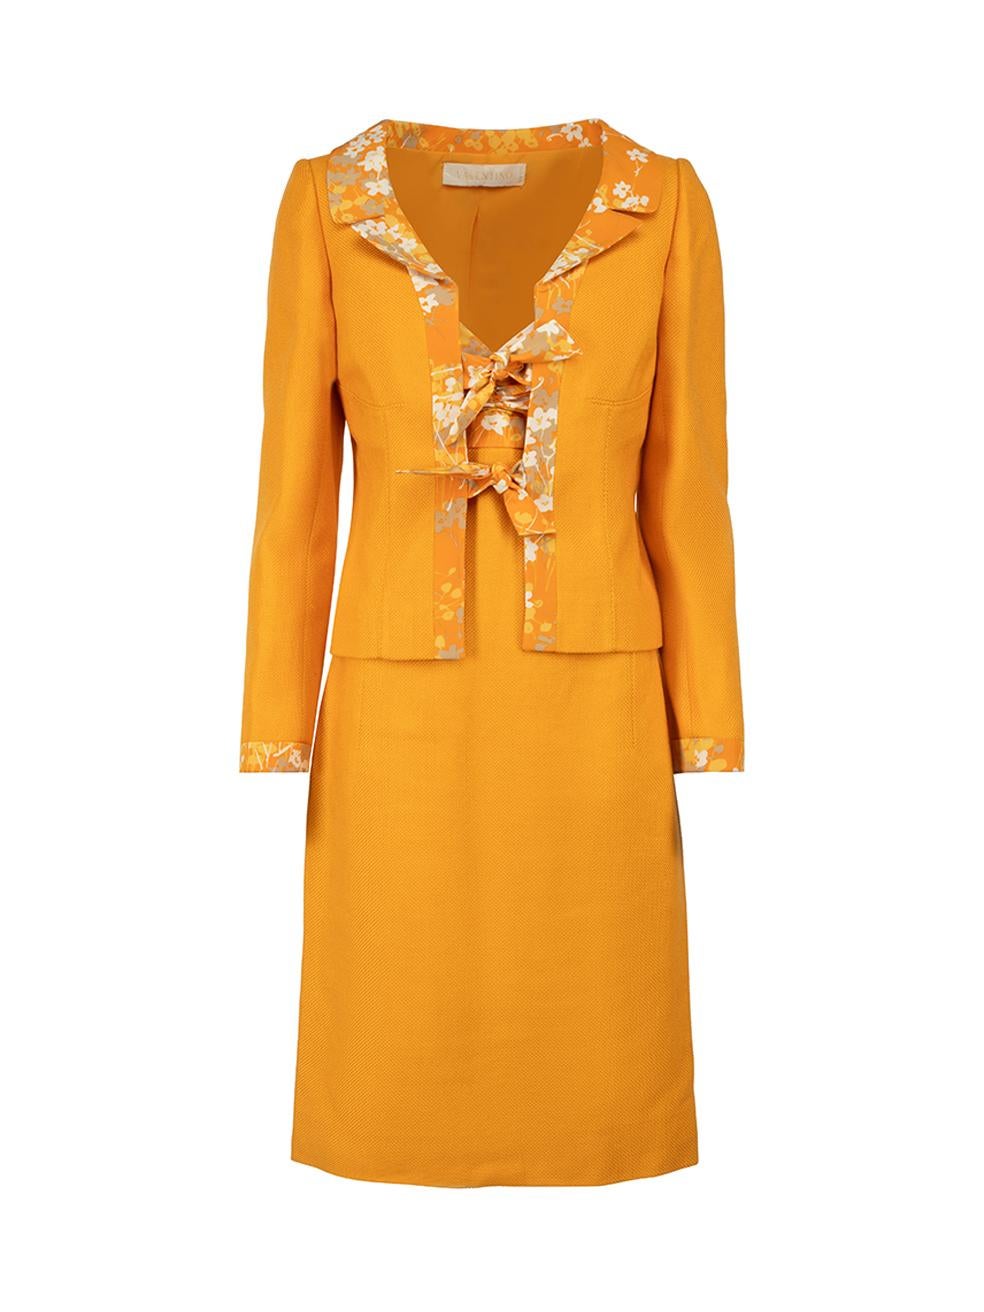 Valentino Vintage Orange Jacket & Dress Set Size L For Sale